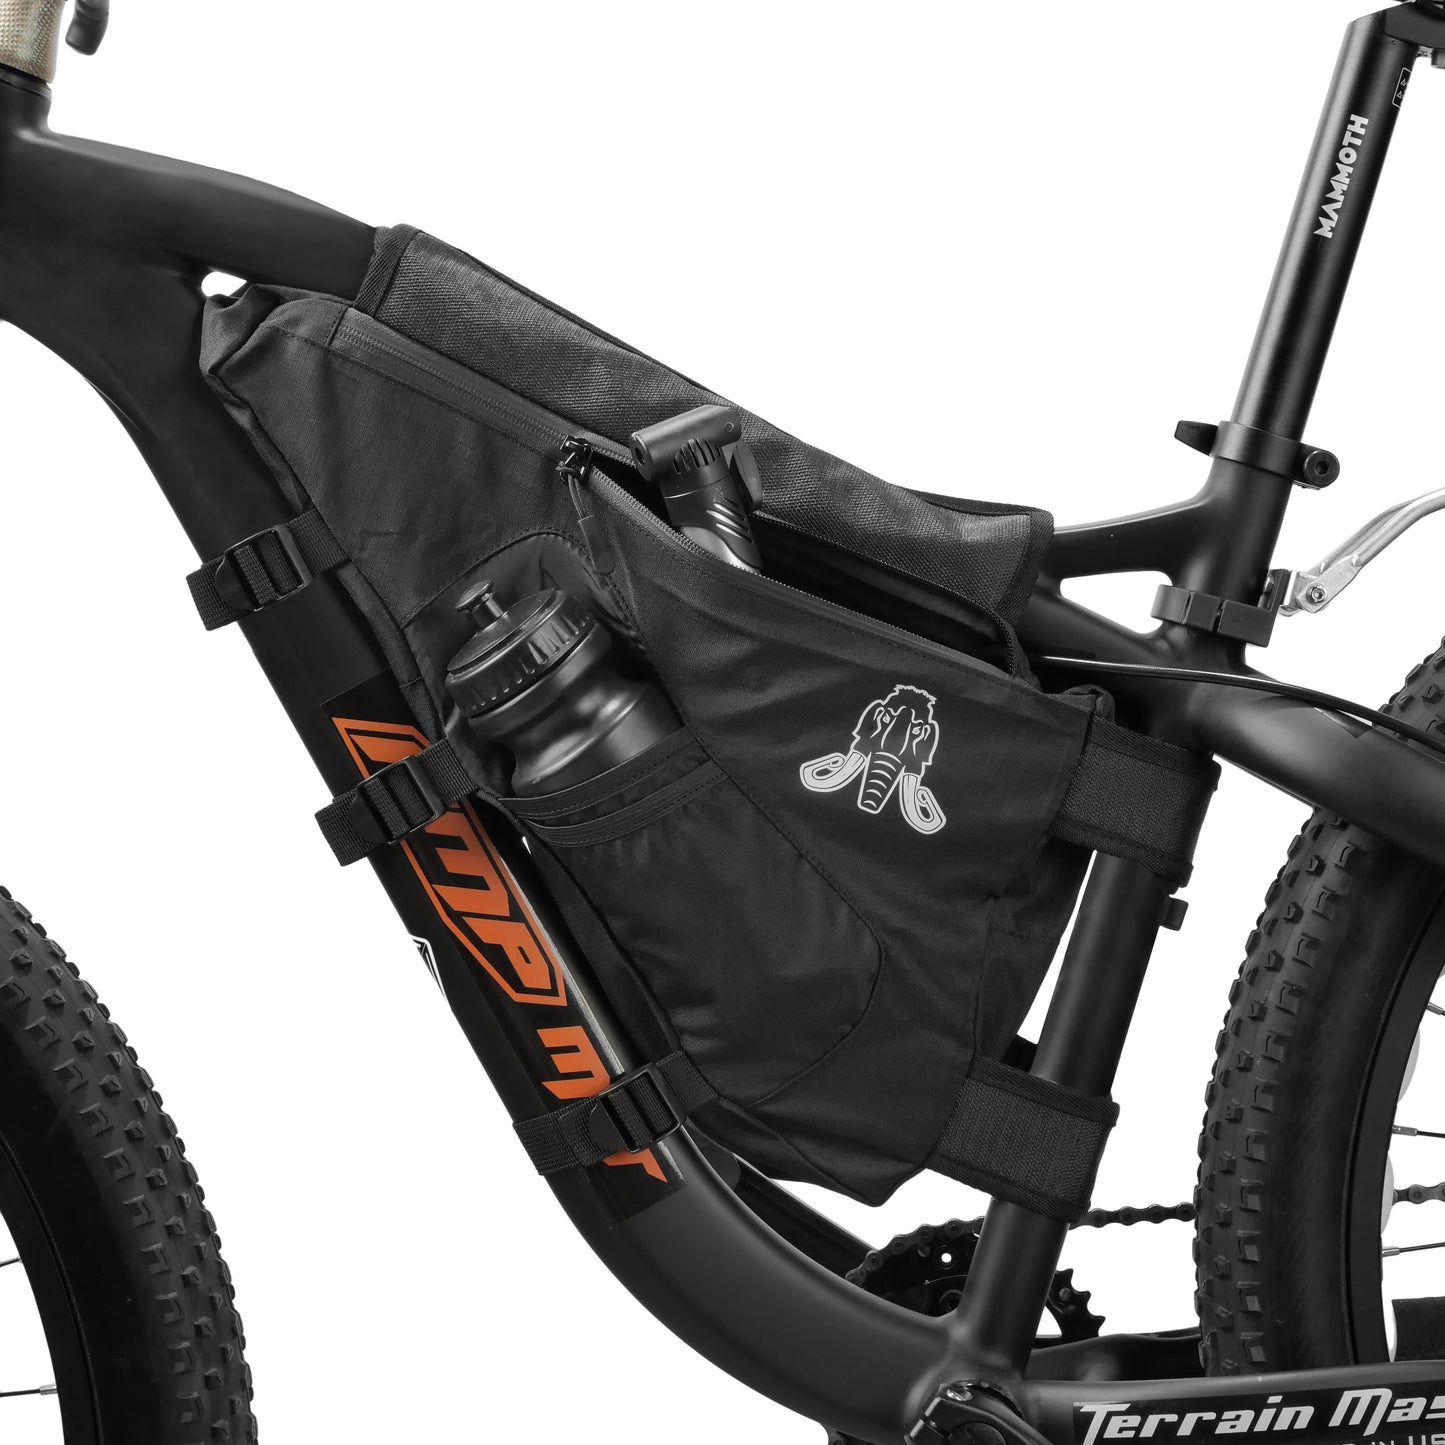 MAMMOTH EMPIRE Bike Bag Bicycle Triangle Bag Bike Bike Frame Bag Cycling Accessories MTB Bike Bag Storage Bag Bike Accessories Cycling Essentials [Black]